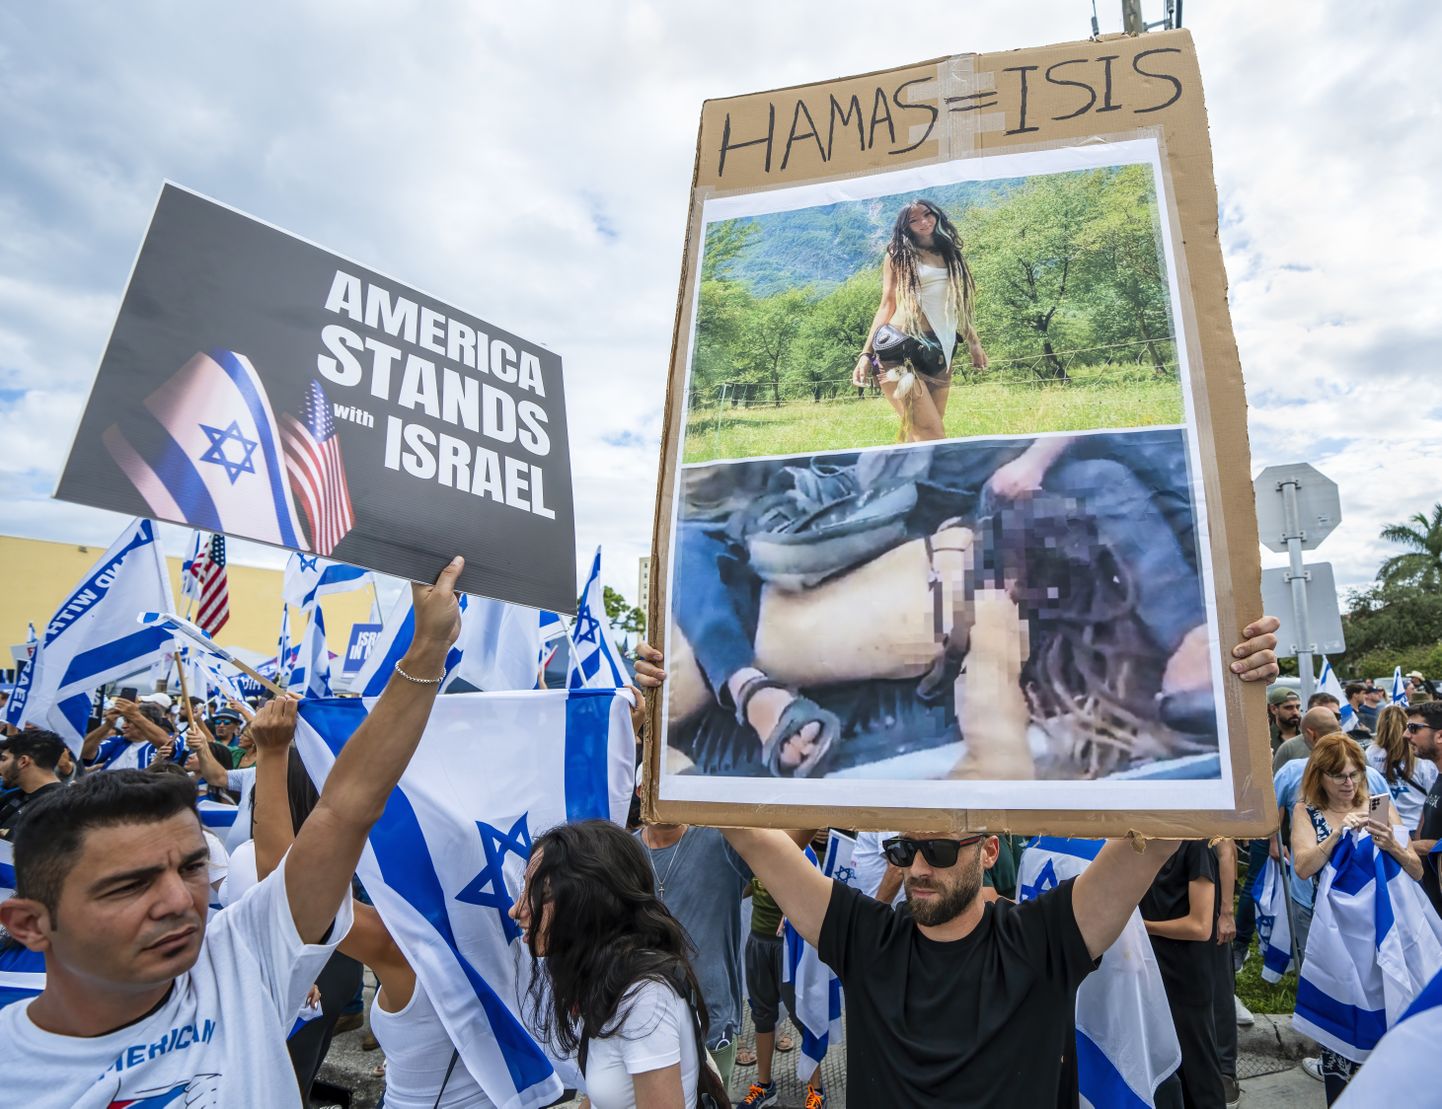 Митинг в поддержку Израиля и осуждения ХАМАС после смертоносных атак палестинской террористической организации. В руках у мужчины фото Шани Лук, которая был похищена террористами ХАМАС.